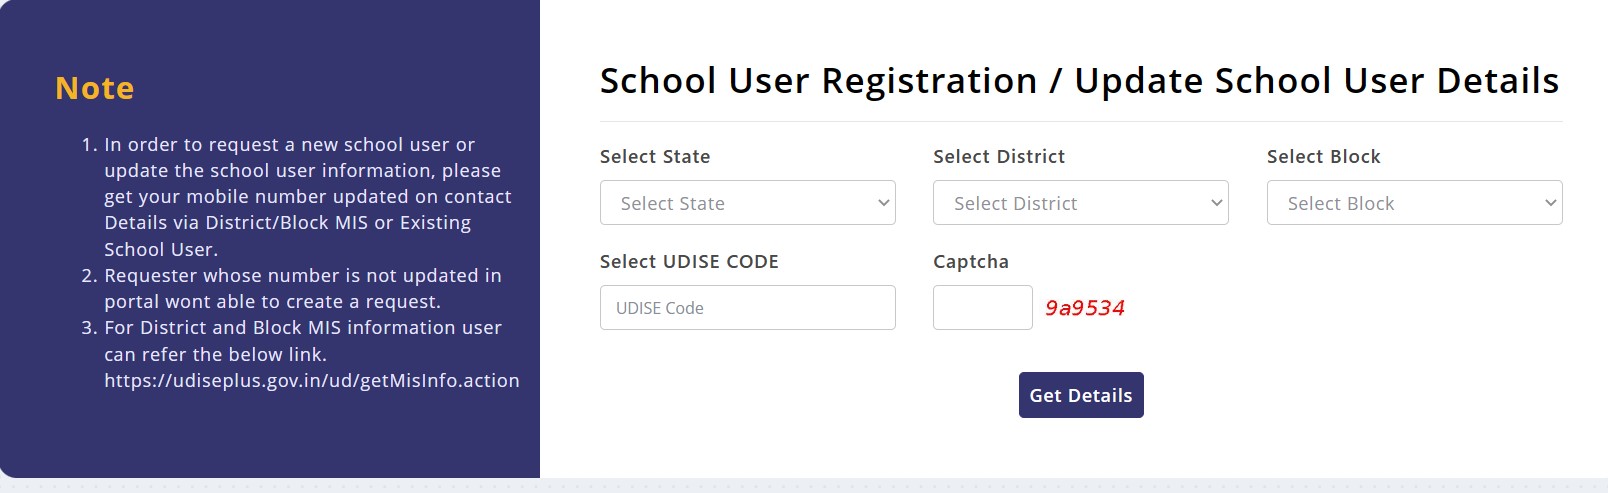 School user registration form